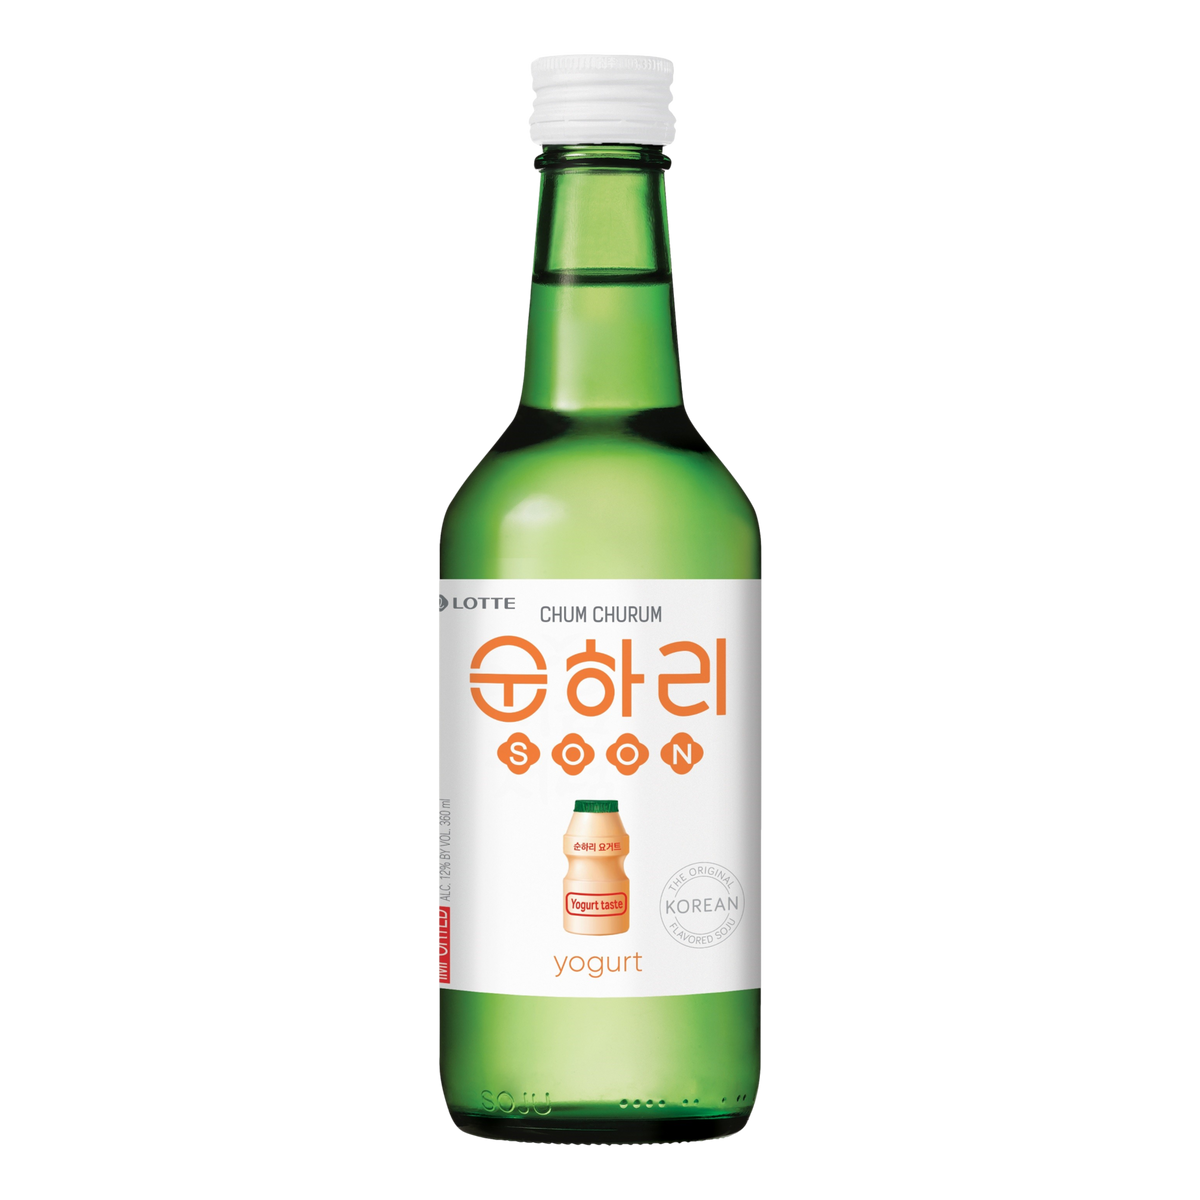 Lotte Chum Churum Soonhari Yogurt Soju 360ml Bottle Single